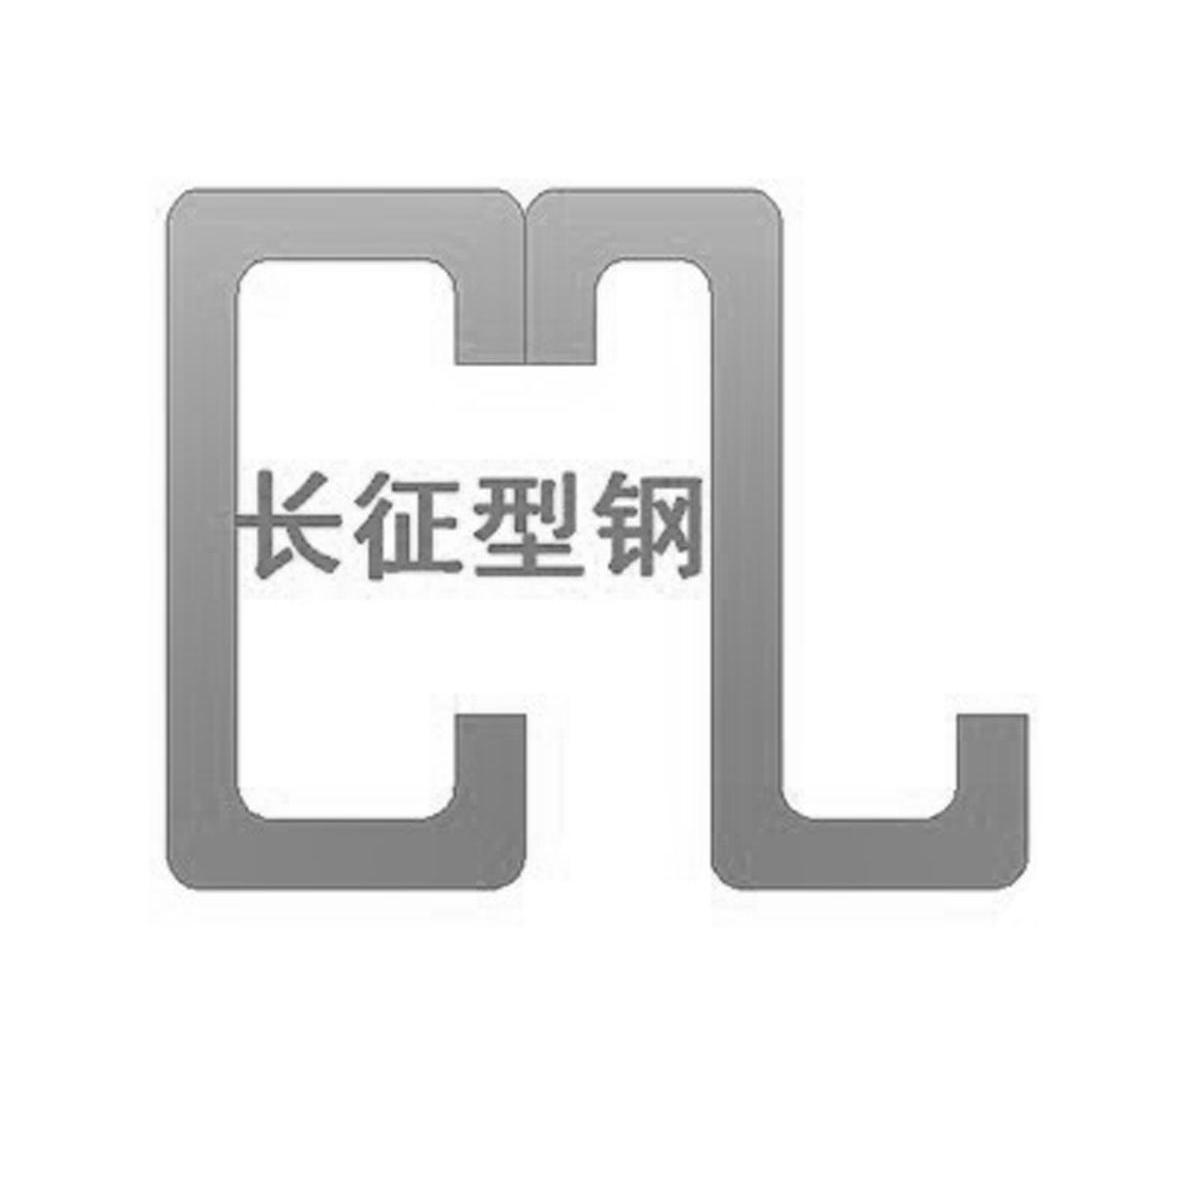 长征型钢logo